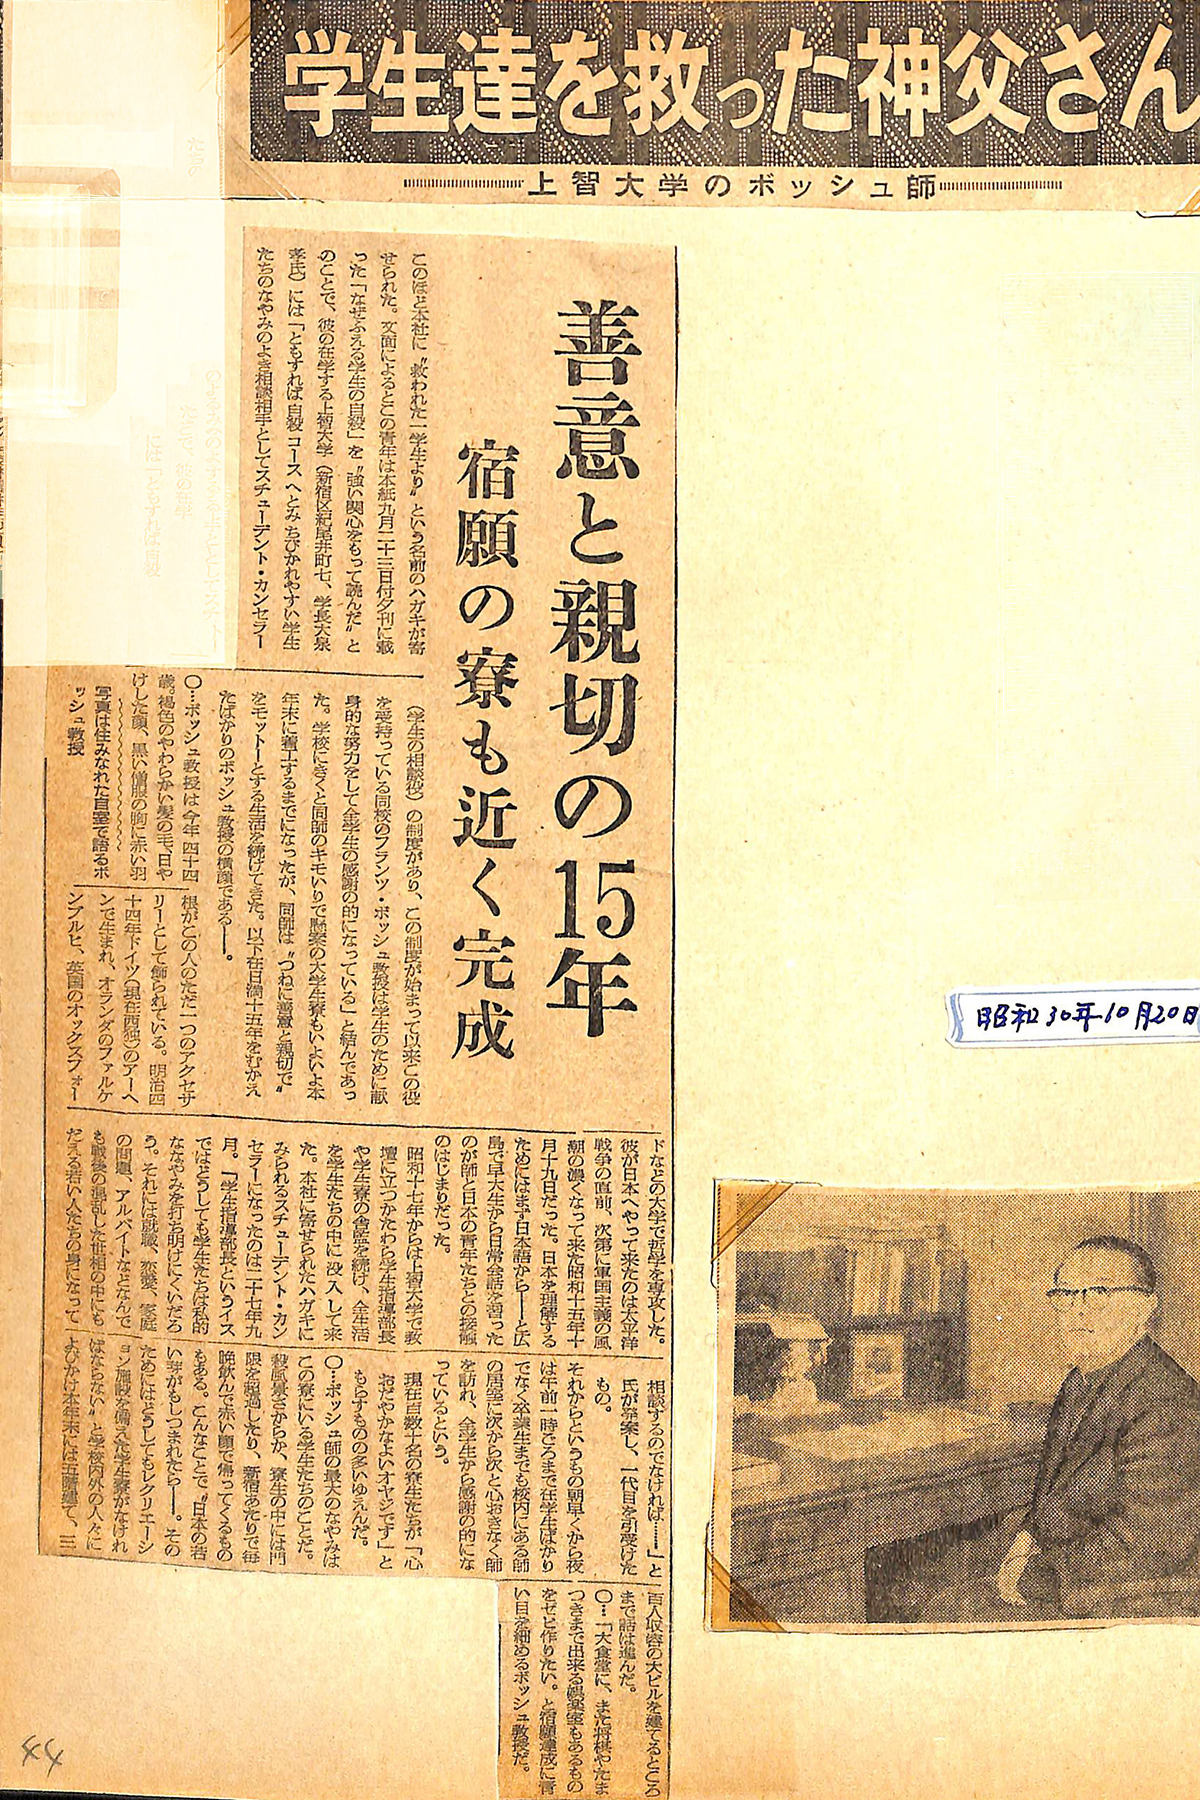 ボッシュ神父が上智会館建設に尽力したことを示す1955年10月20日付の日本経済新聞の新聞記事（ボッシュ神父のアルバムより）